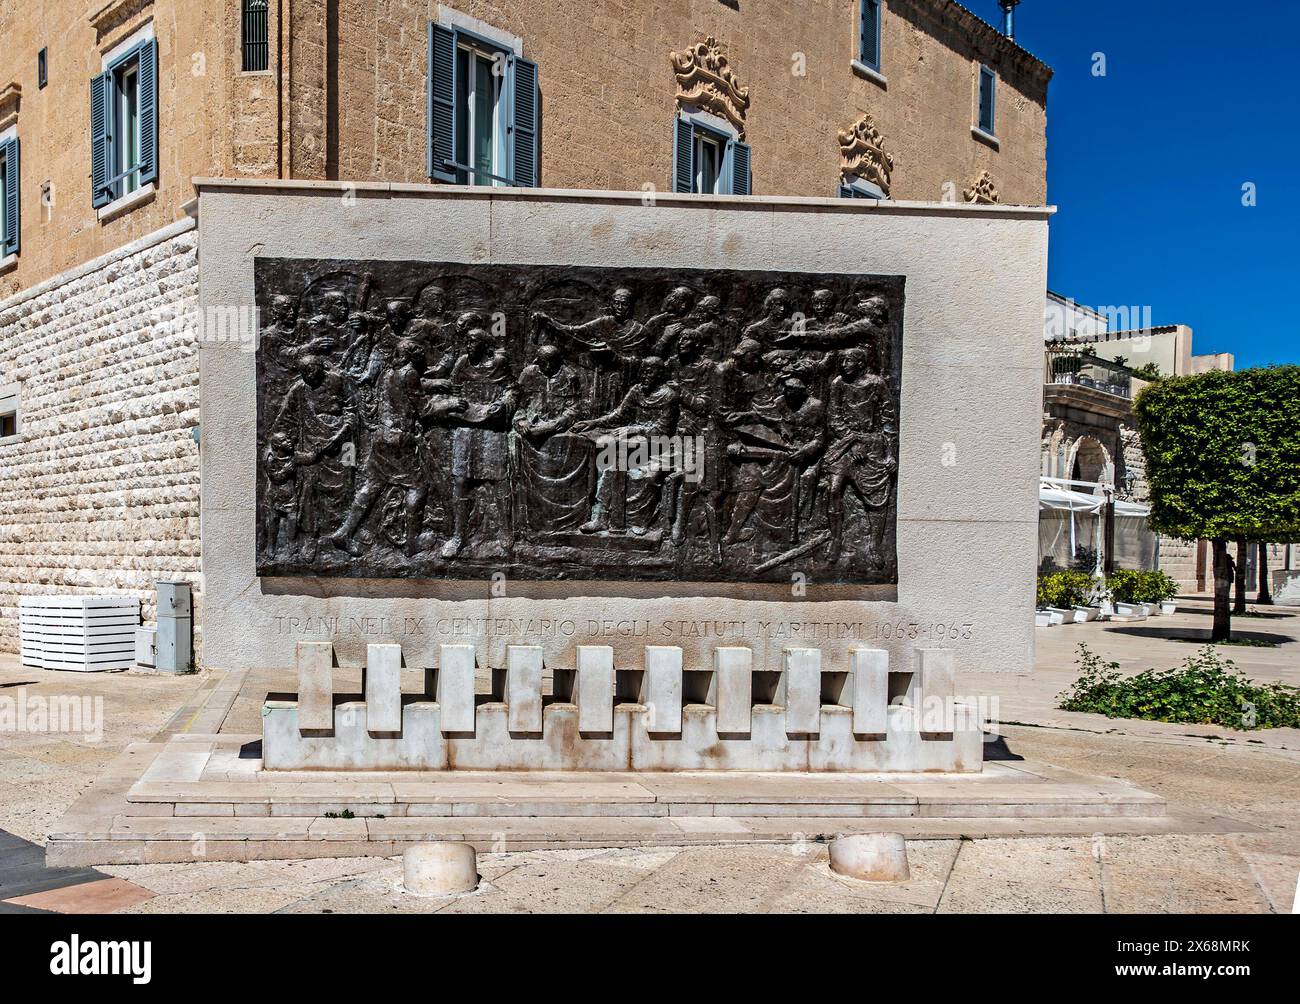 Una scultura a Trani, in Italia, in commemorazione degli Statuti marittimi, promulgata a Trani nel 1063, che governava il commercio marittimo. Foto Stock